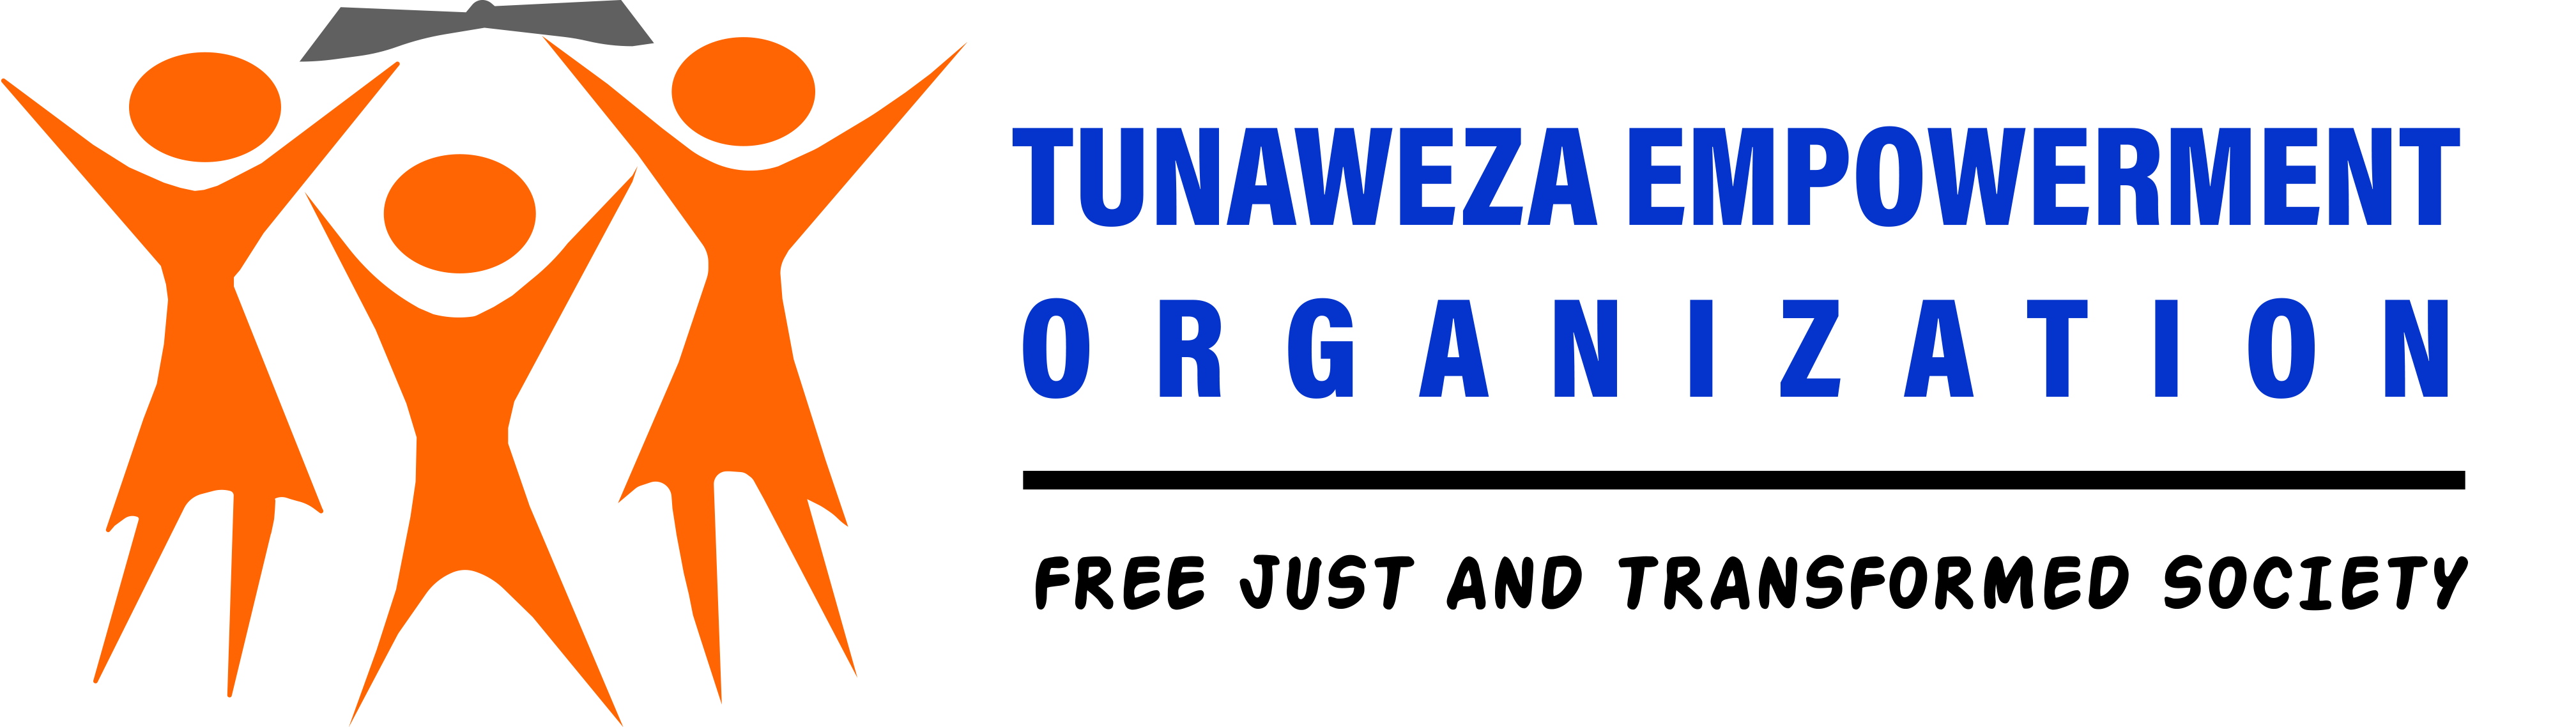 Tunaweza Empowerment